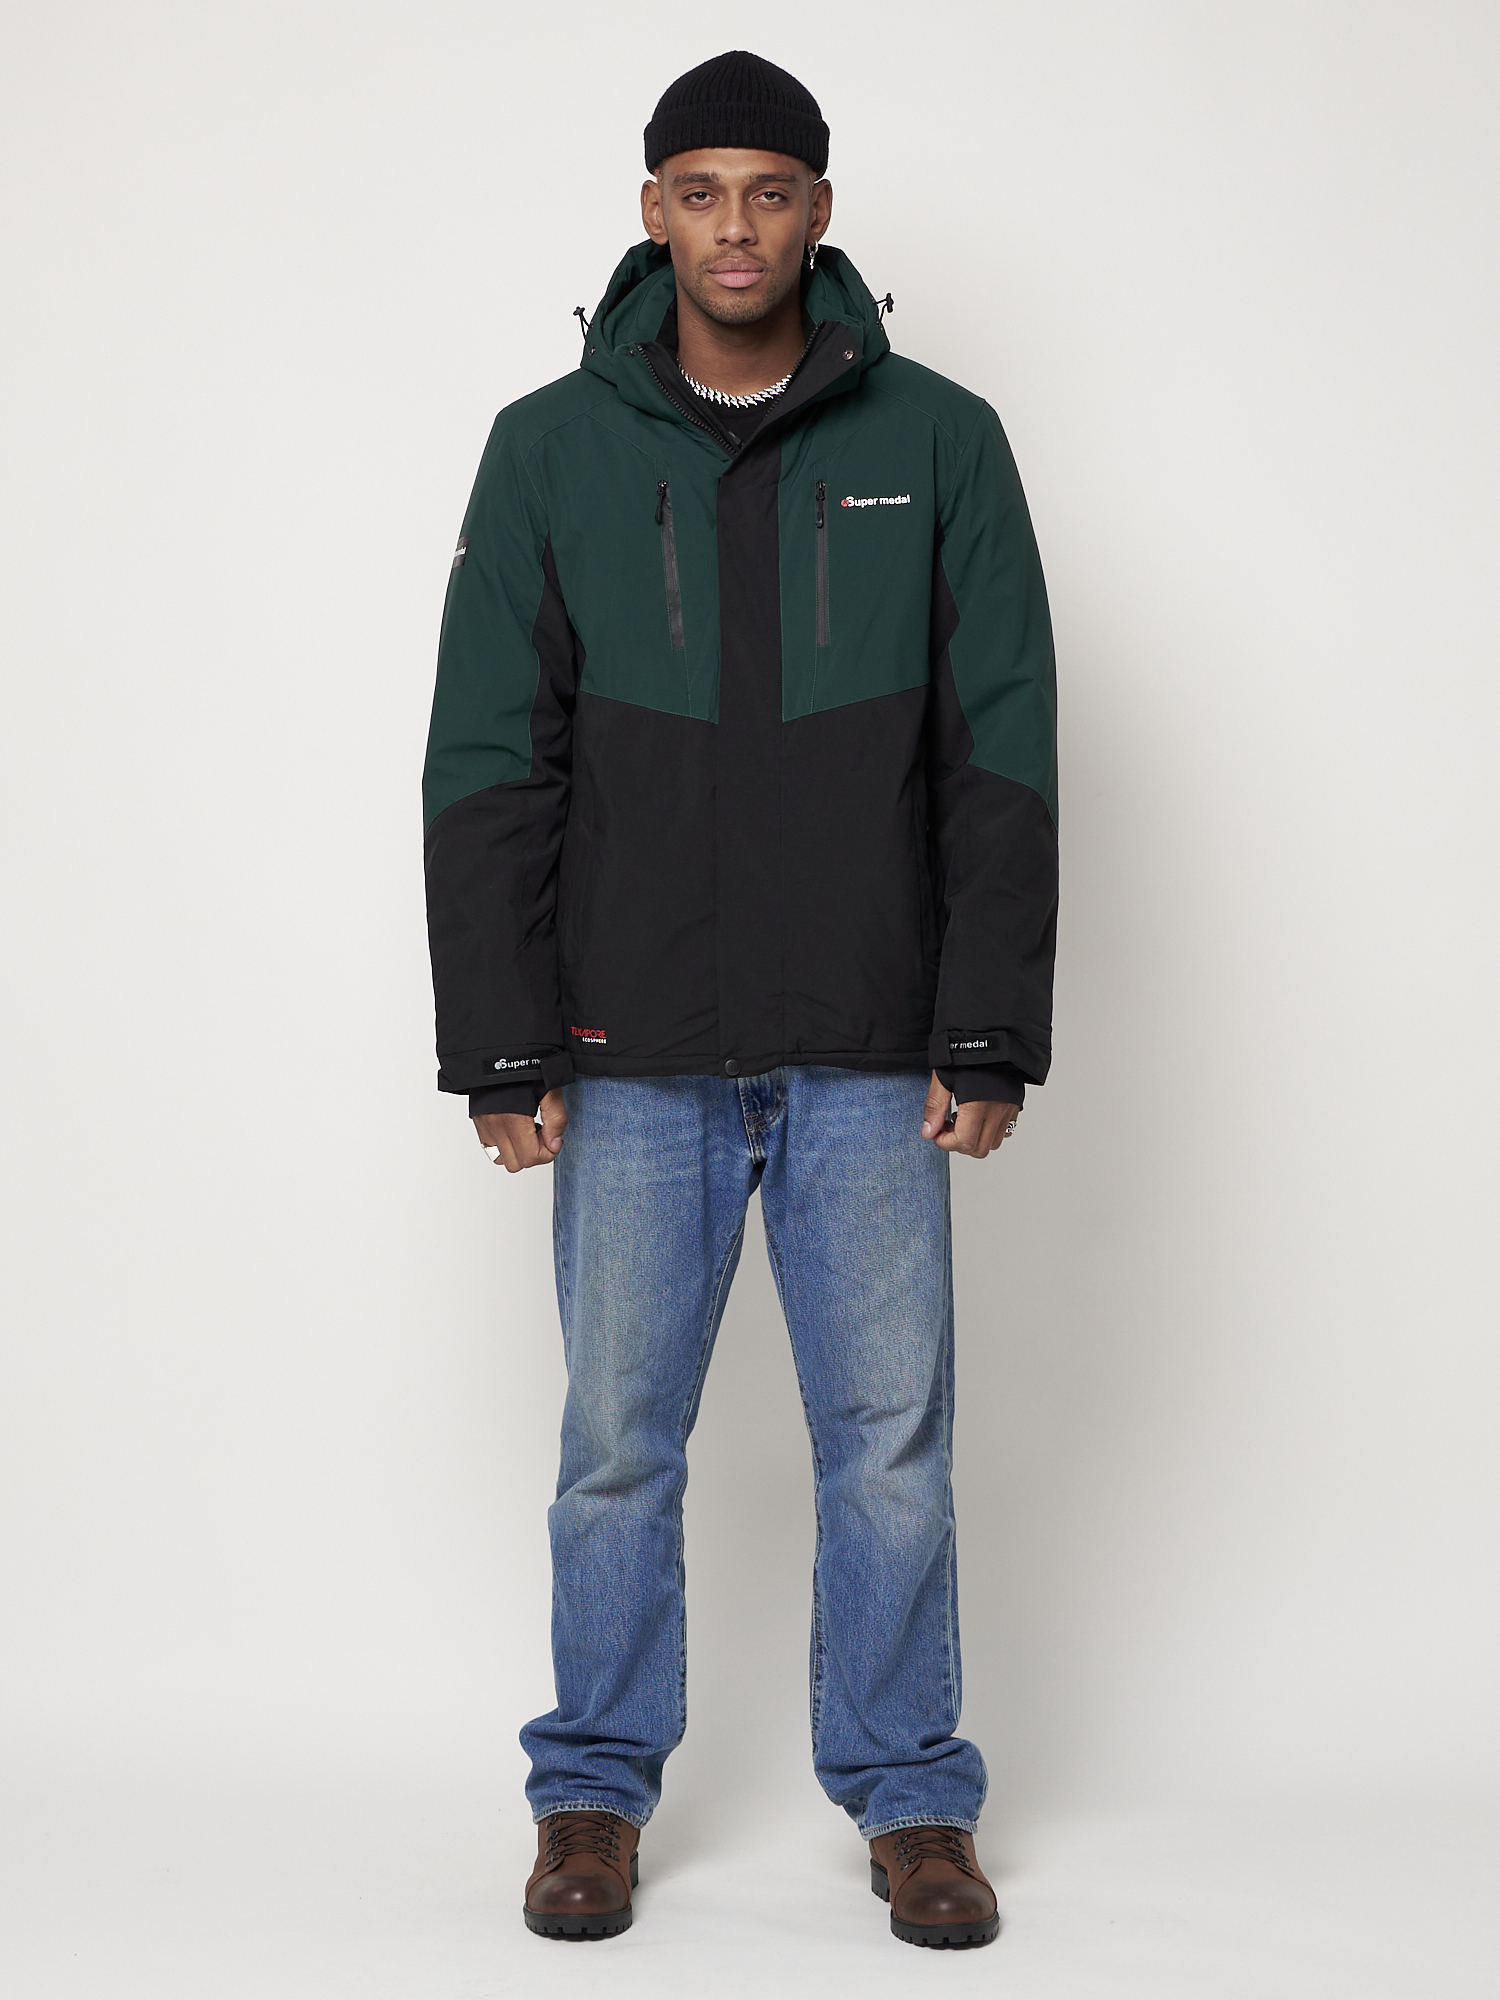 Купить Горнолыжная куртка мужская темно-зеленого цвета 88819TZ